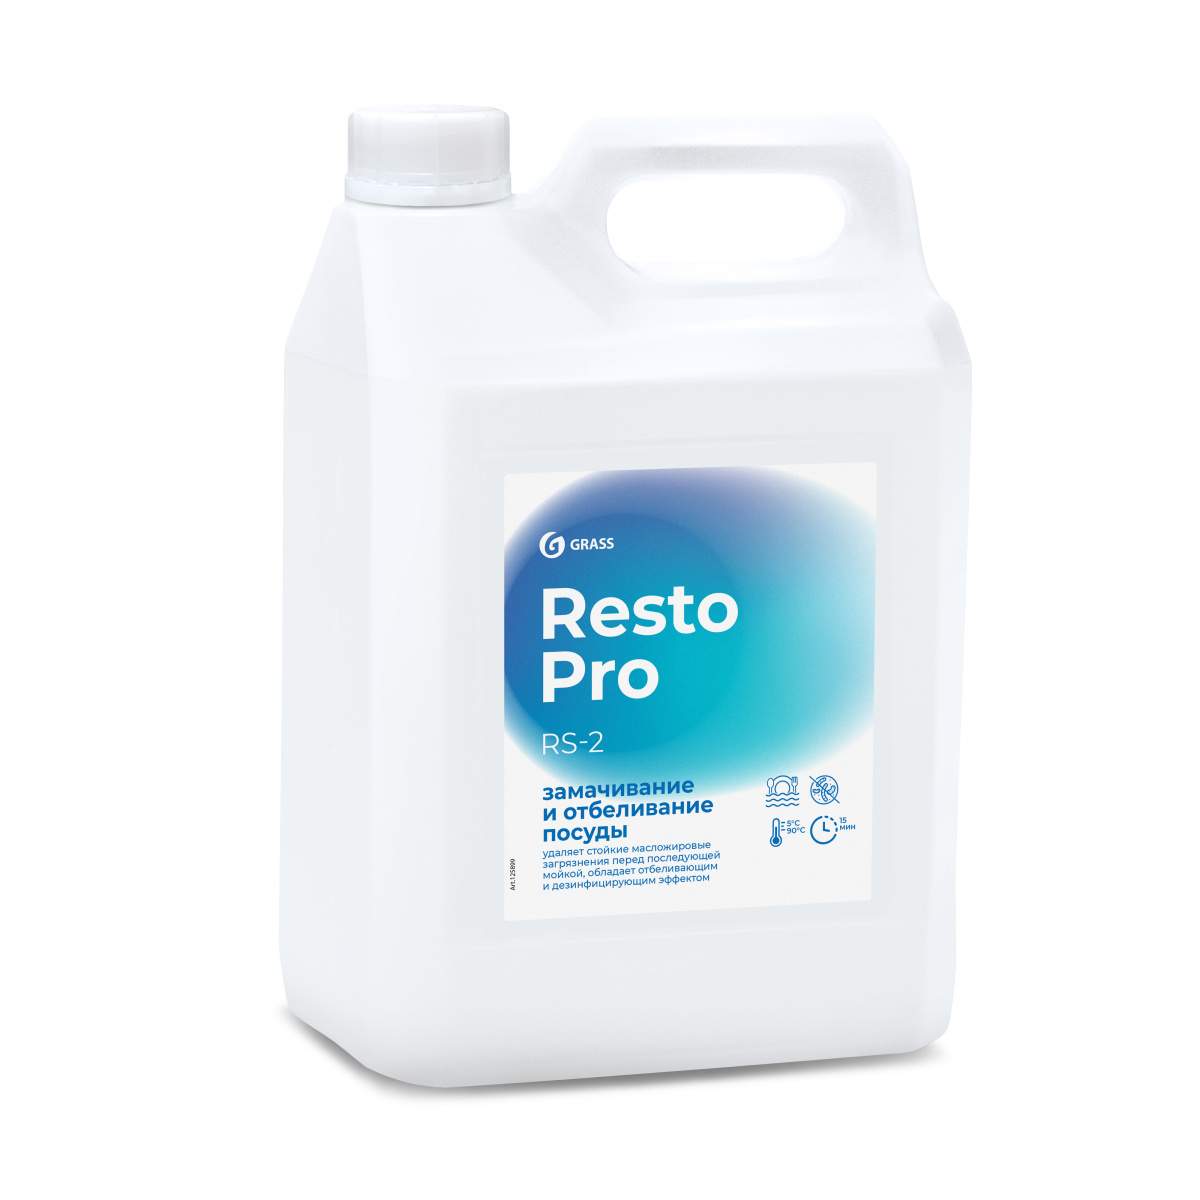 Resto Pro RS-2 Средство для замачивания и отбеливания посуды 5 л 